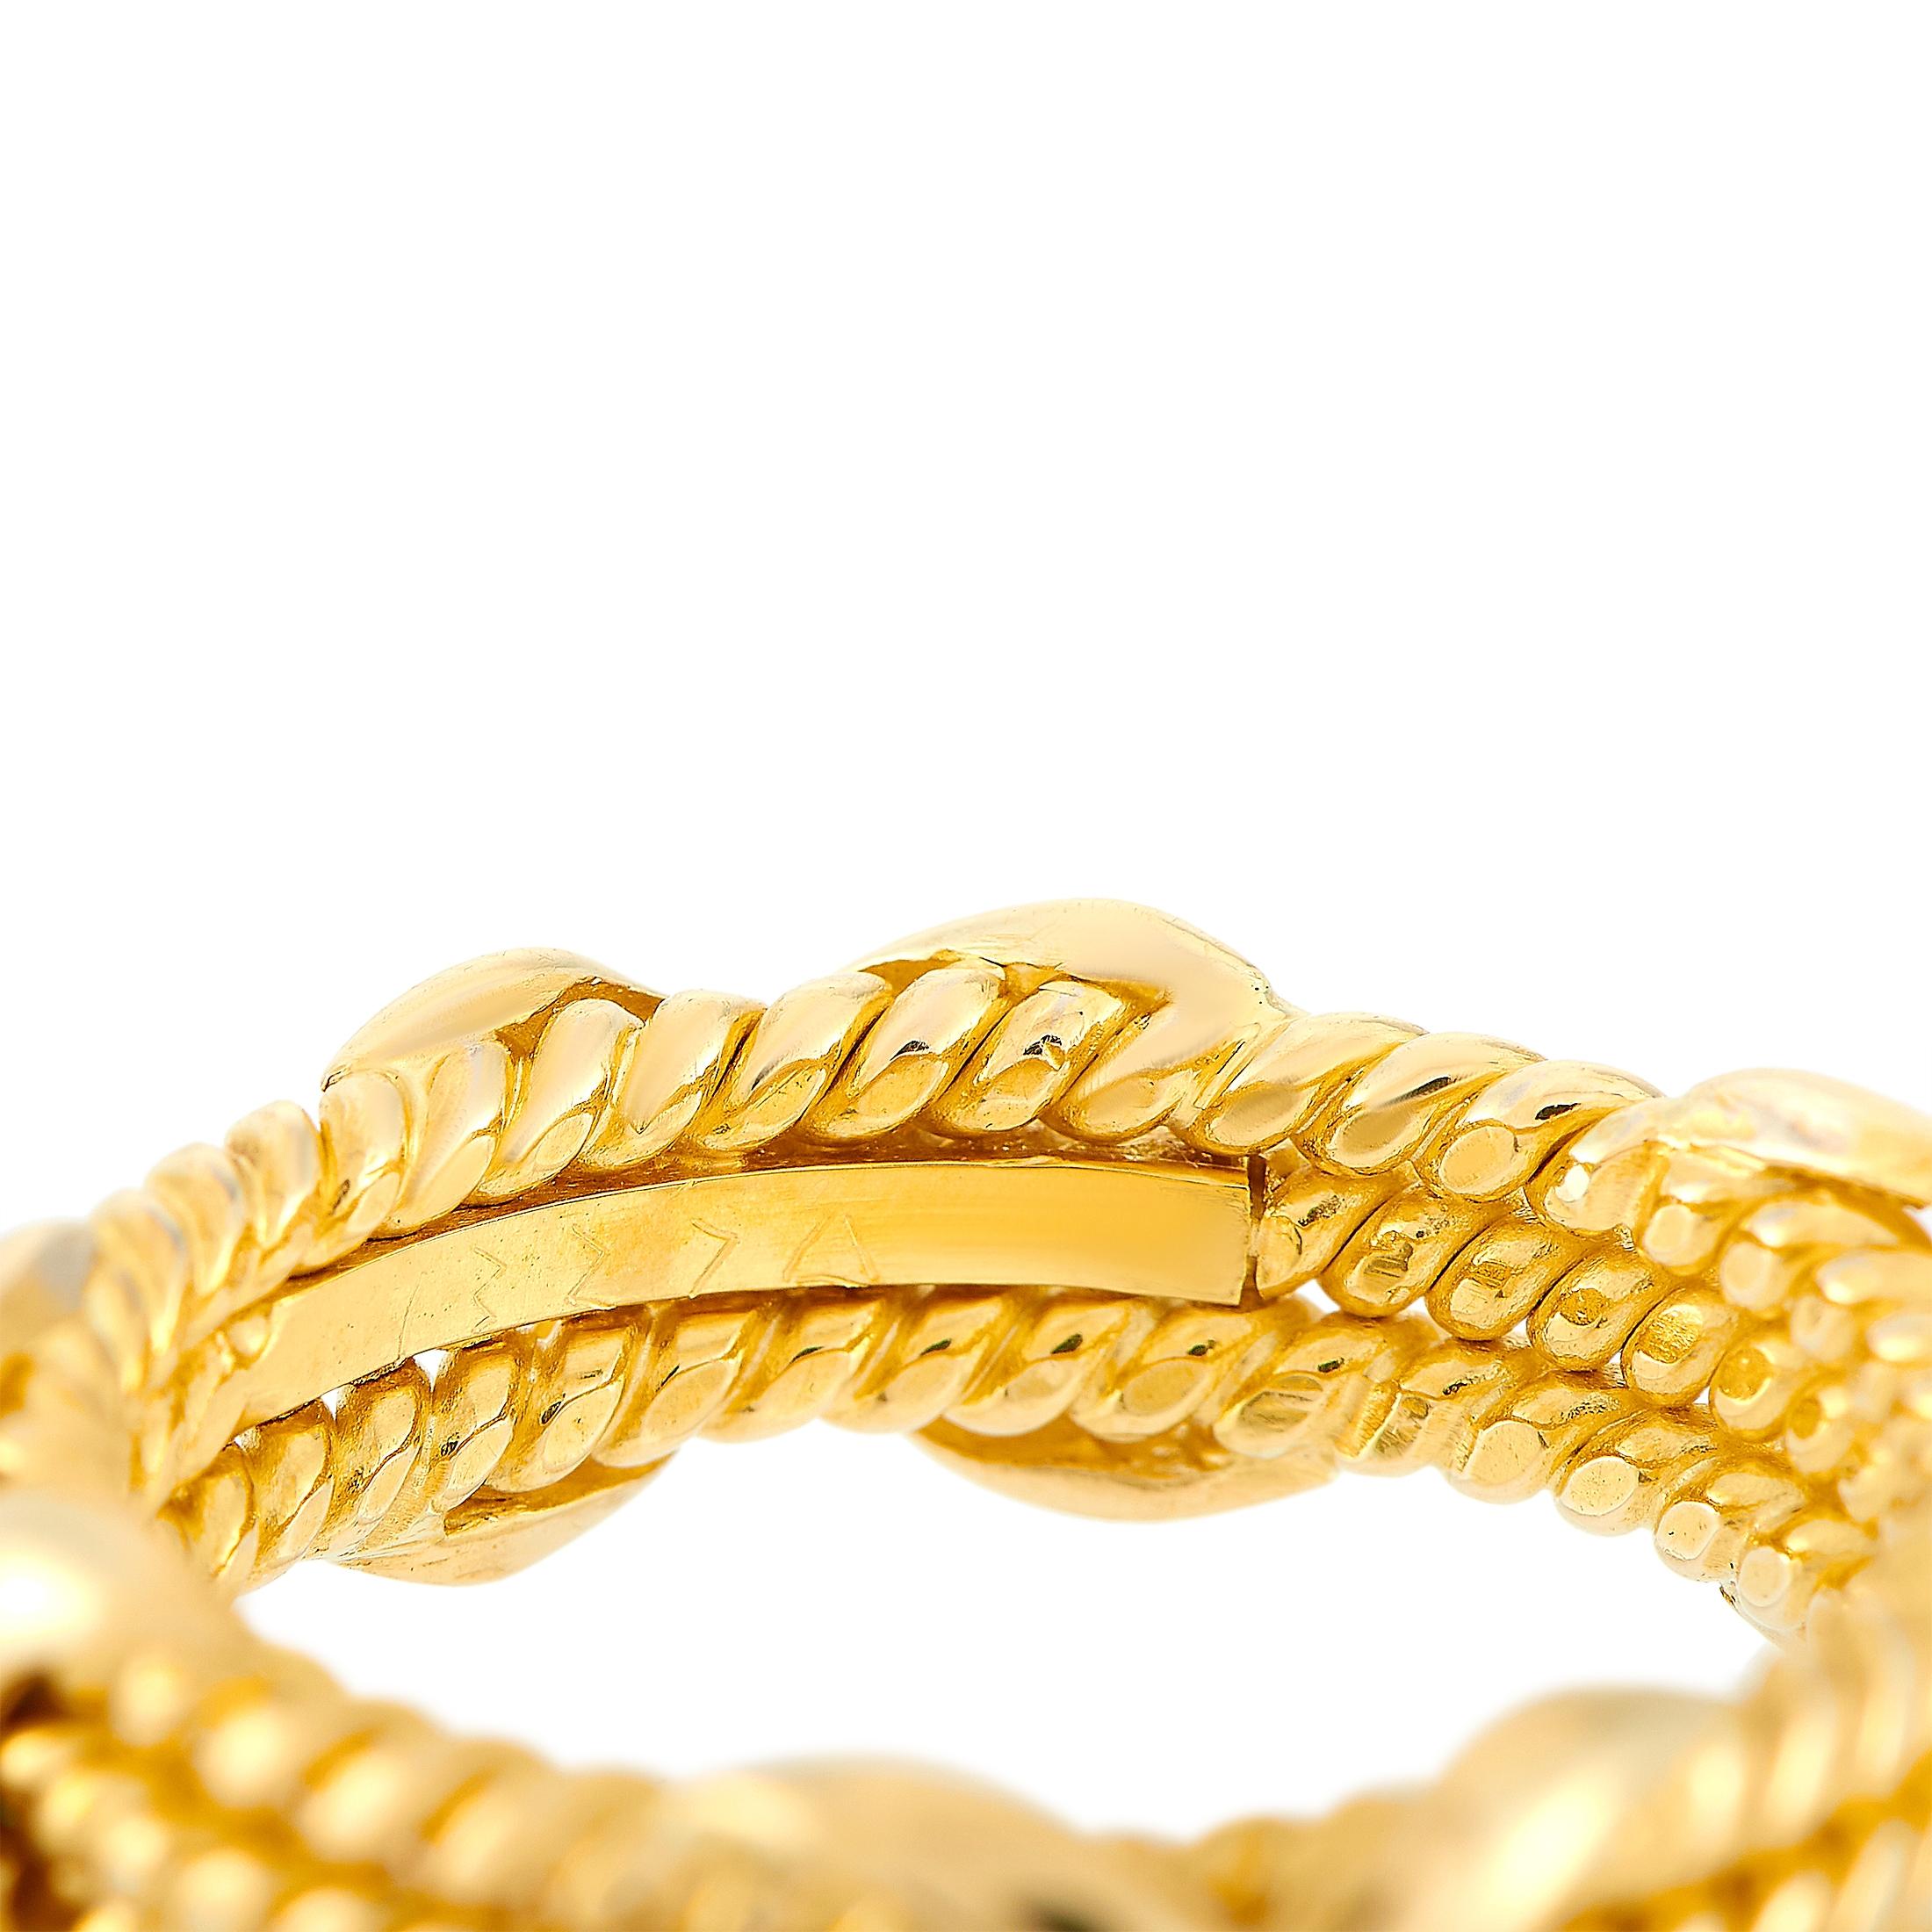 Tiffany & Co. Schlumberger 18 Karat Yellow Gold Ring 2